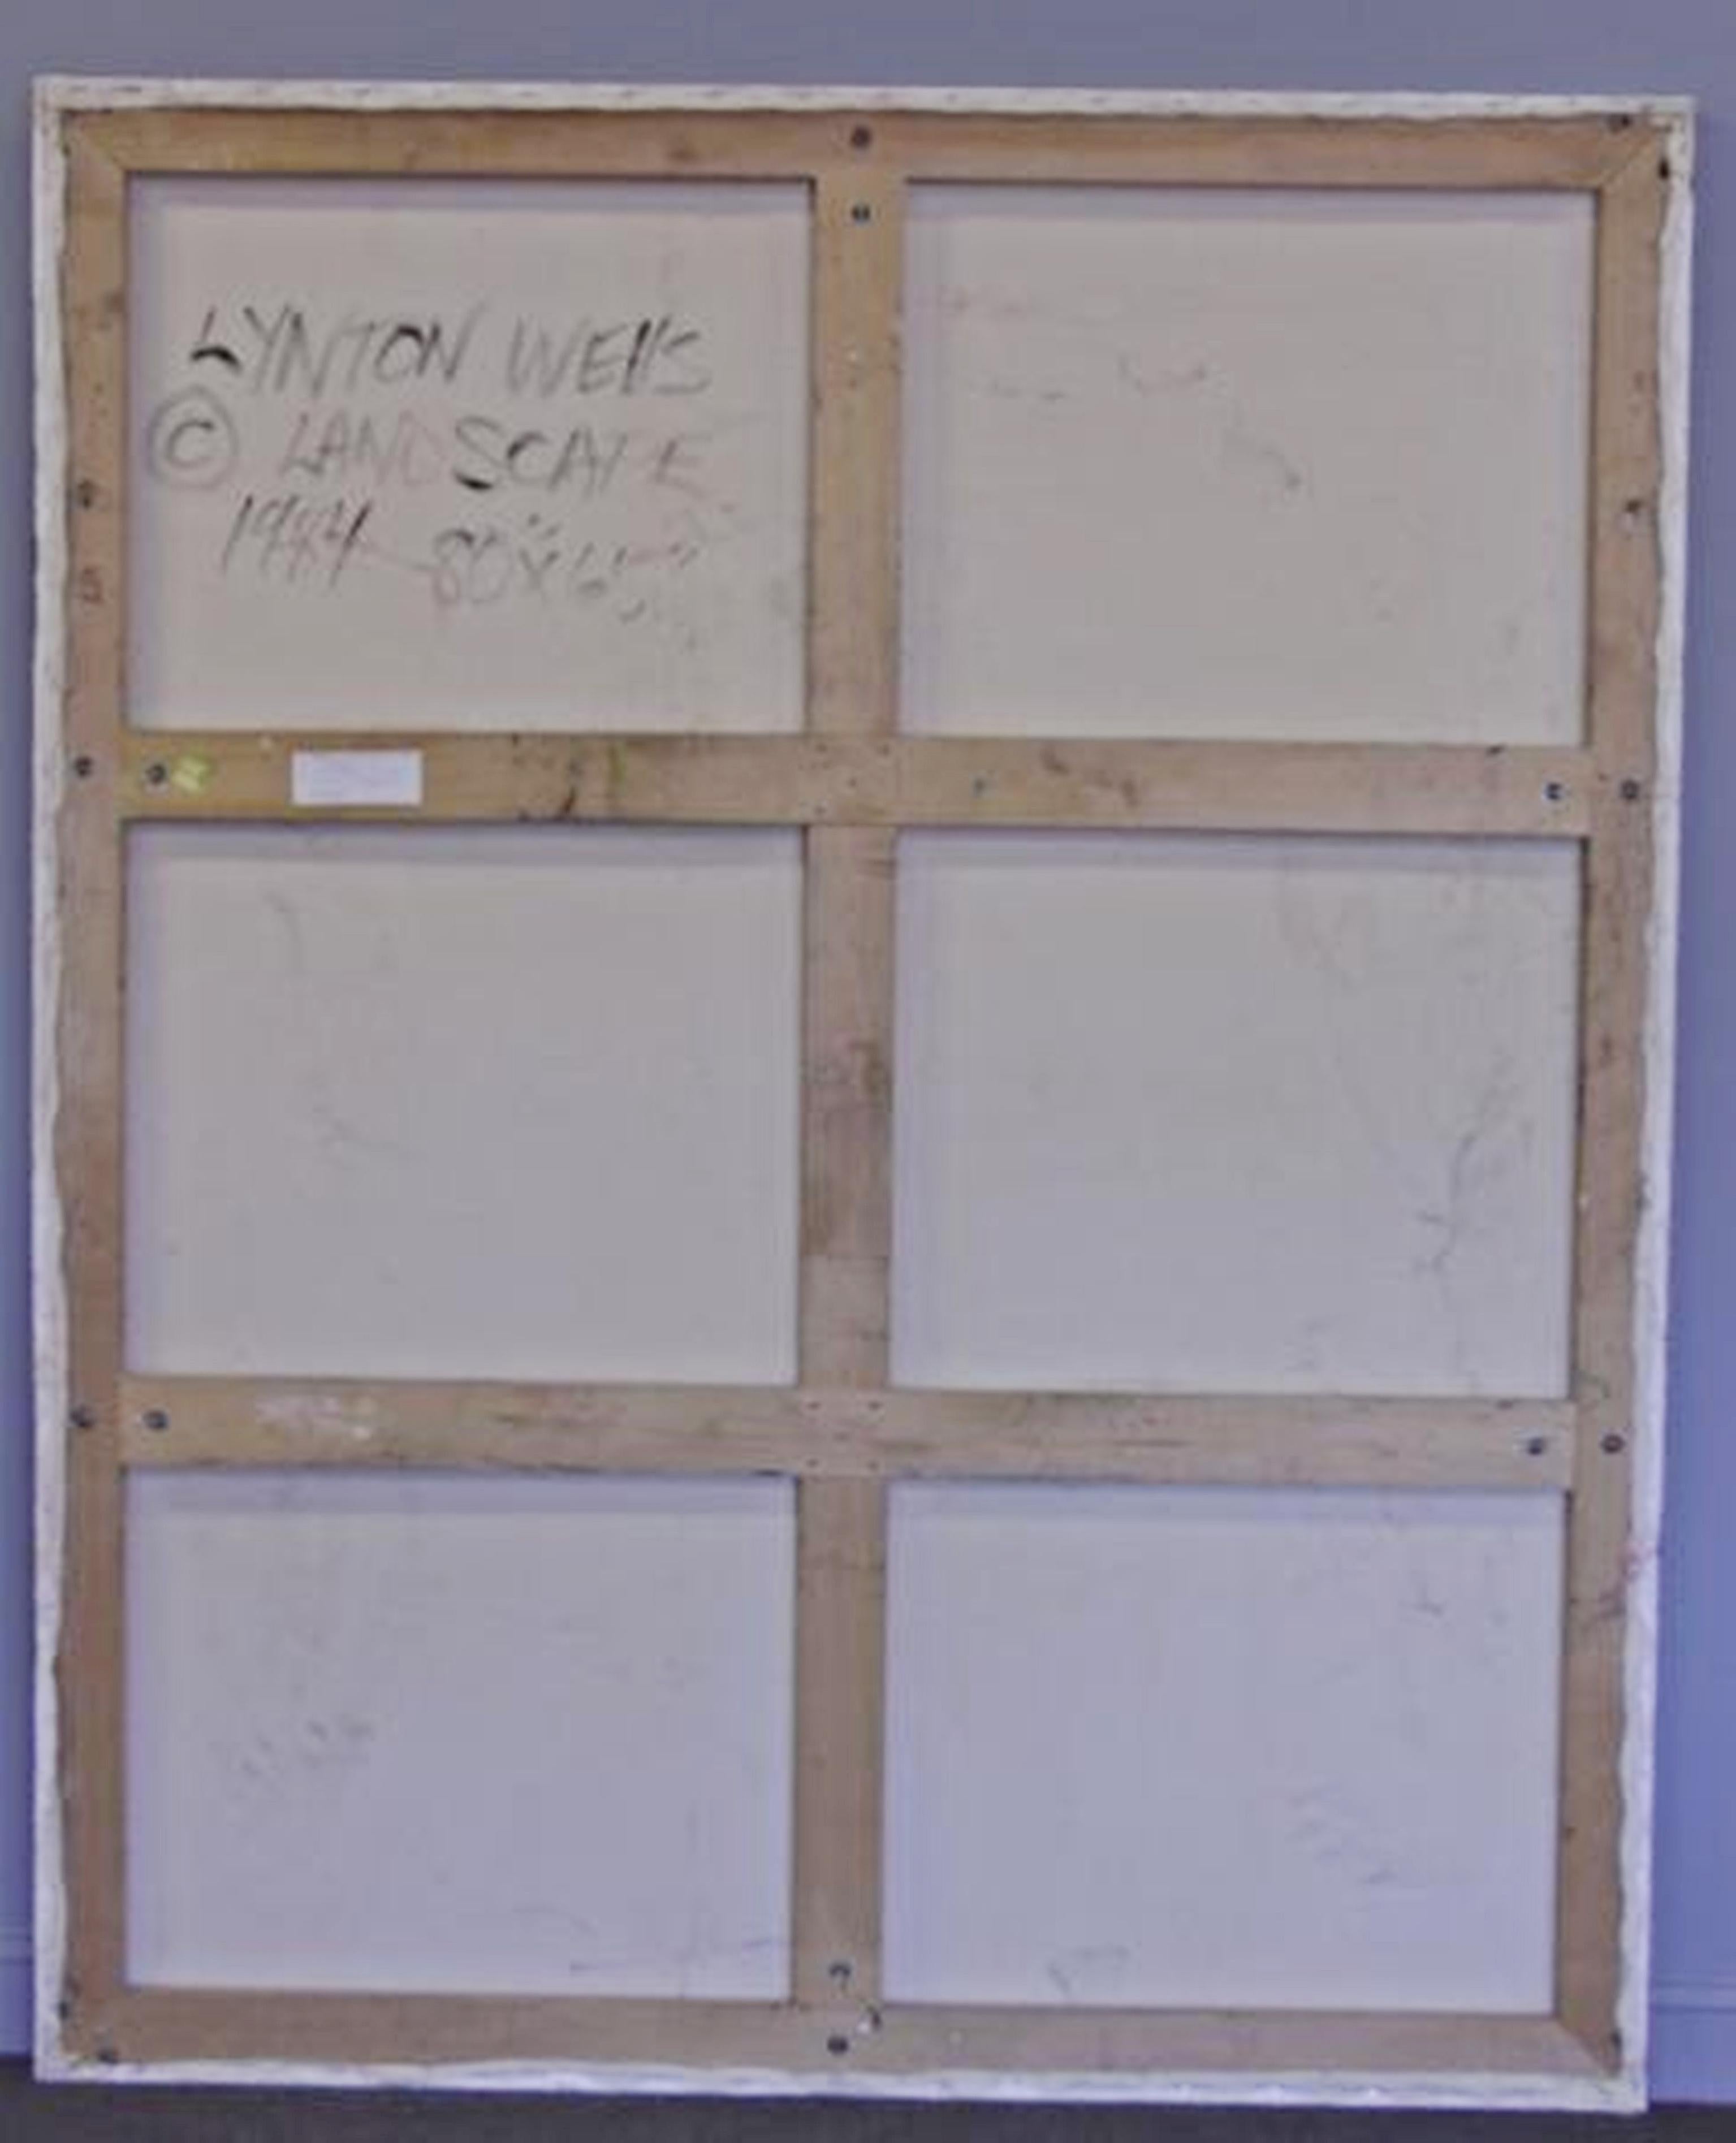 Lynton Wells
Paysage, 1984
Huile sur toile (avec le Label Sable Castelli original au dos du cadre)
Signée à la main, titrée, datée de 1984 avec le symbole du copyright de l'artiste et le label d'exposition de la Sable Castelli Gallery.
Cadre